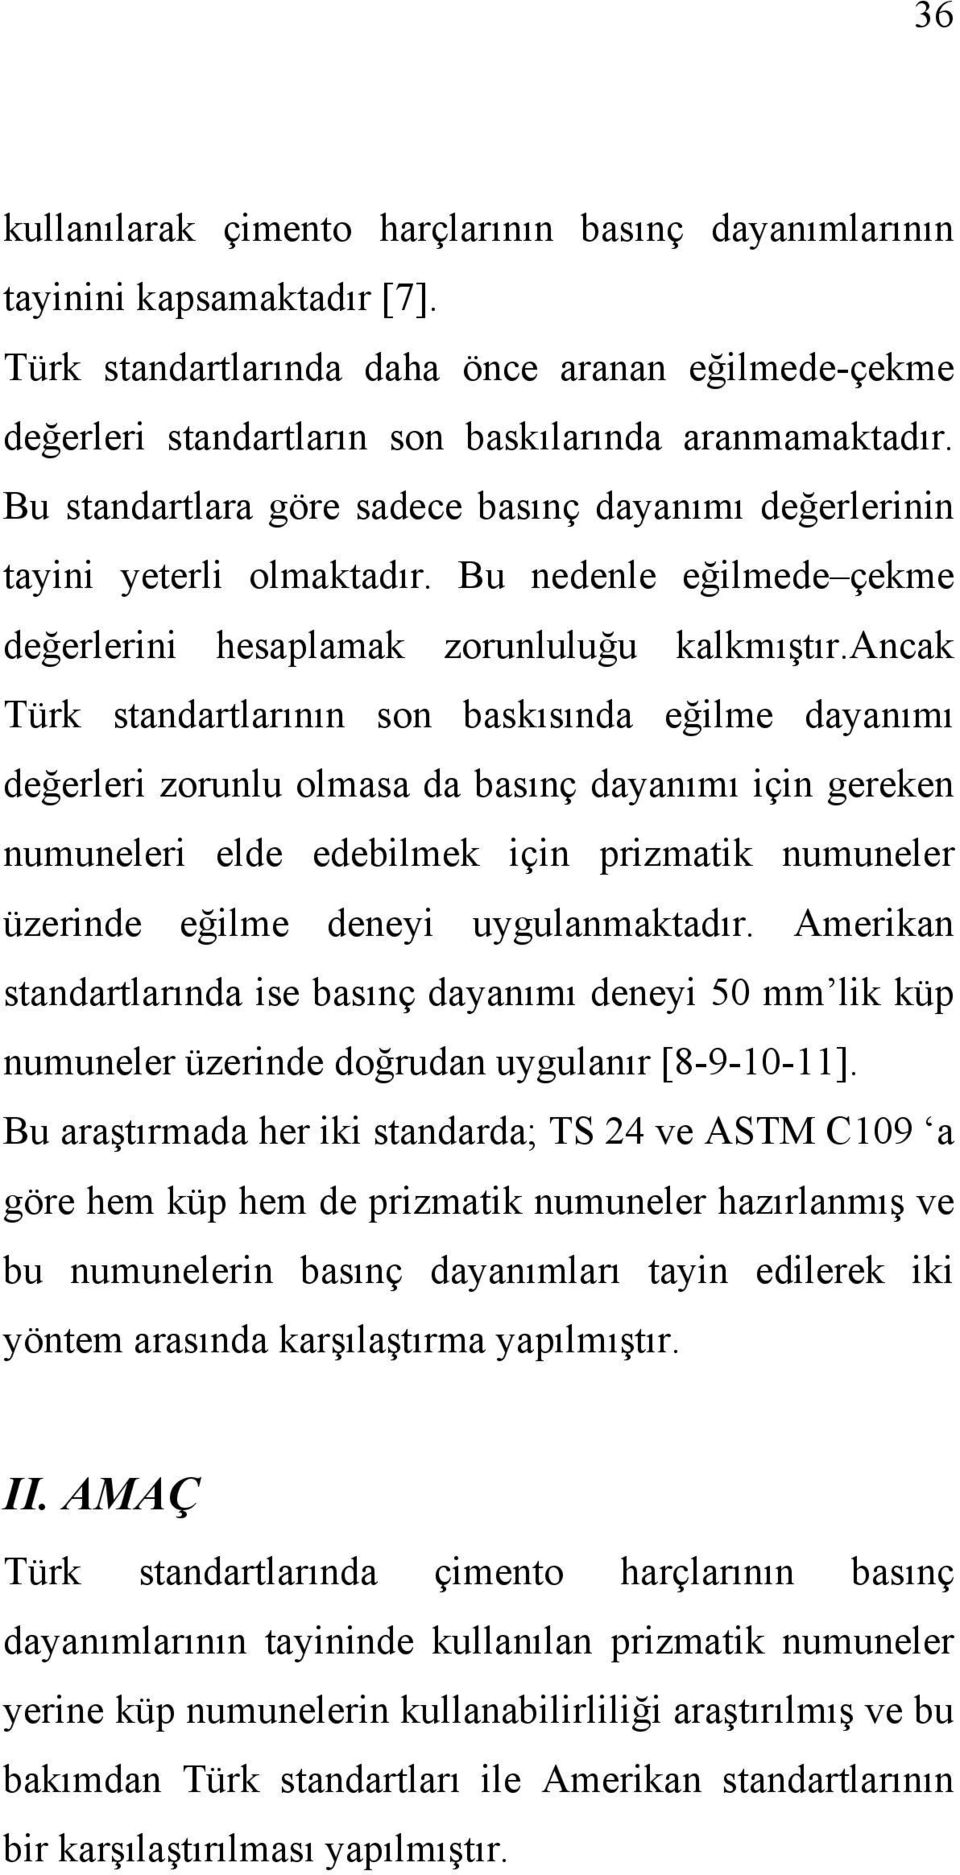 ancak Türk standartlarının son baskısında eğilme dayanımı değerleri zorunlu olmasa da basınç dayanımı için gereken numuneleri elde edebilmek için prizmatik numuneler üzerinde eğilme deneyi